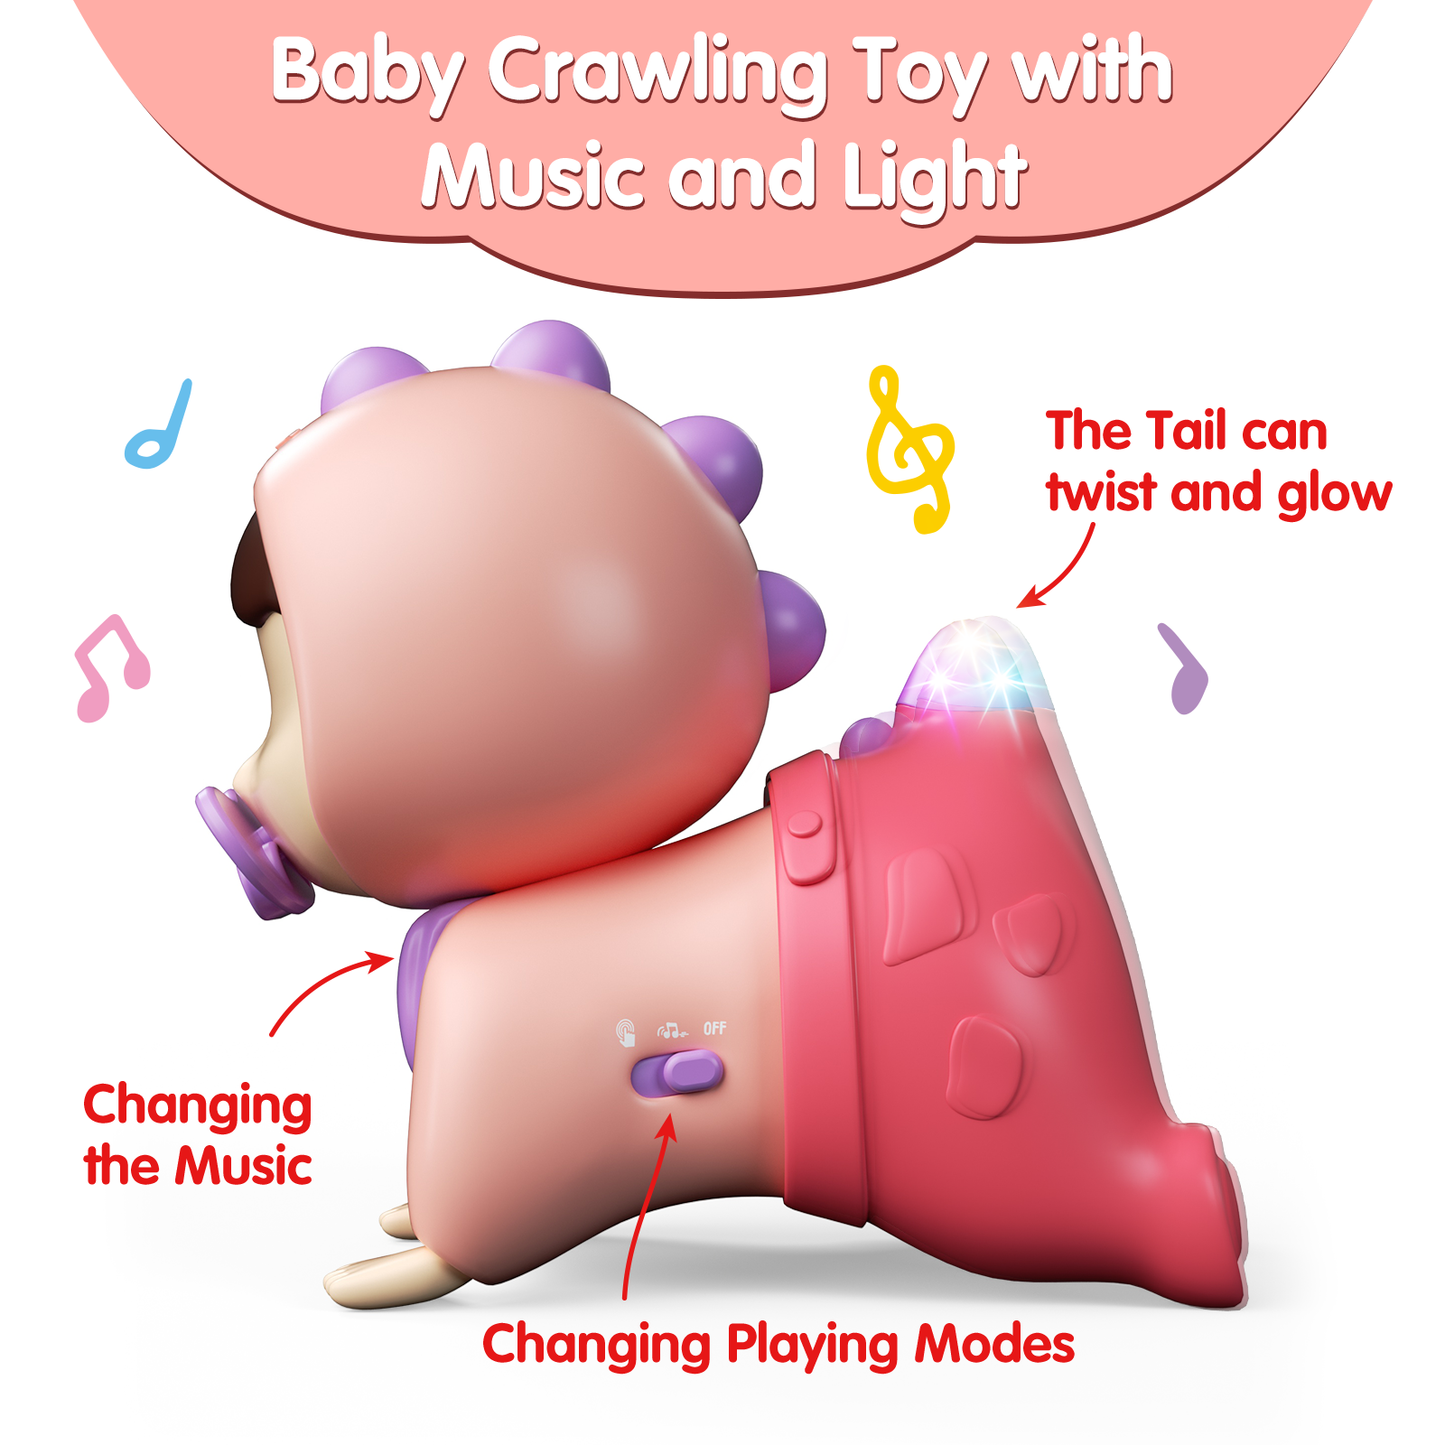 UNIH 嬰兒玩具 6 至 12 個月音樂和輕型嬰兒玩具、嬰兒爬行玩具